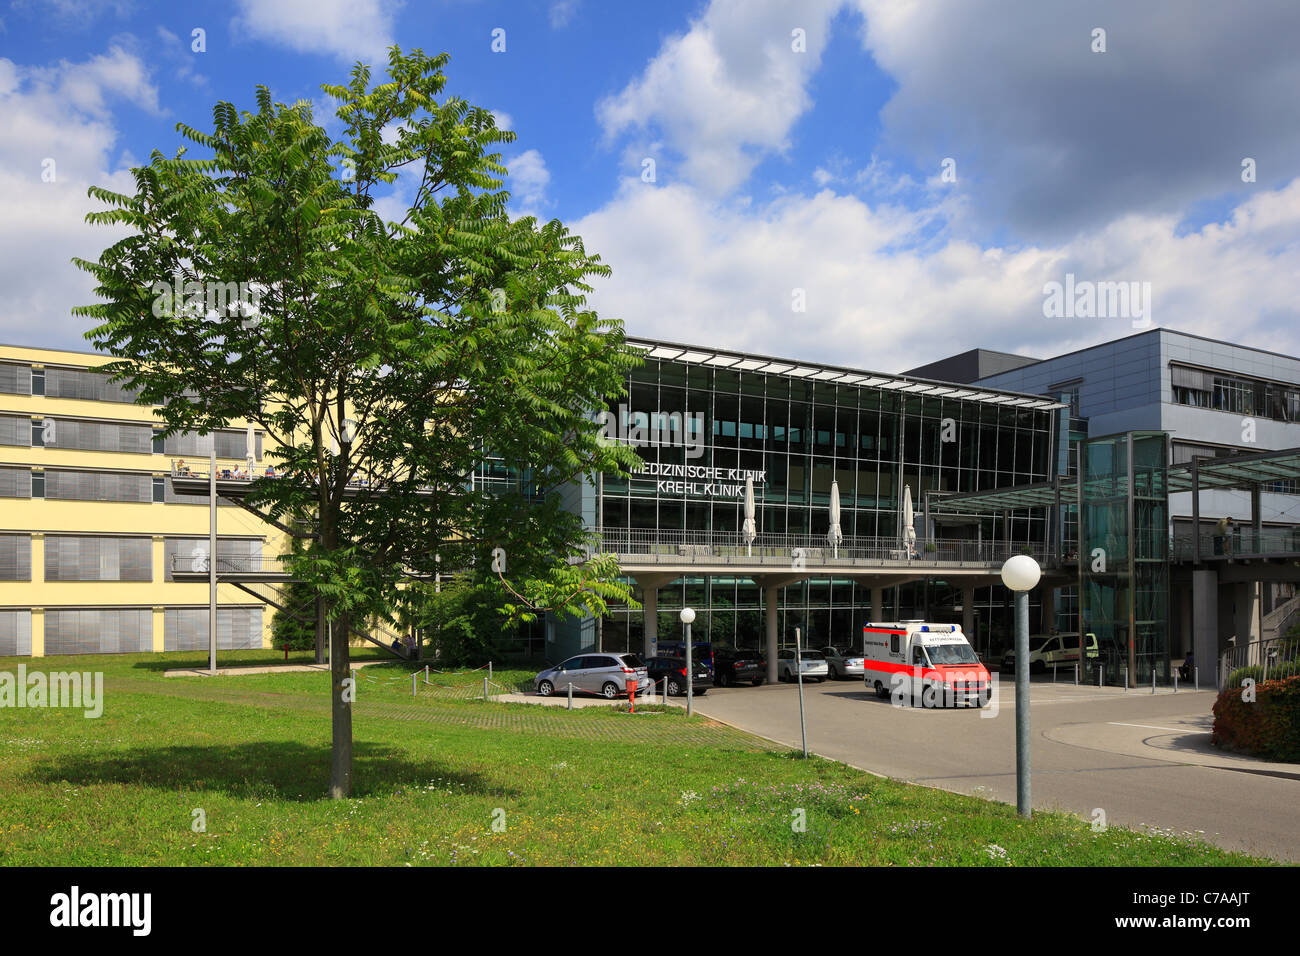 Universitaetsklinikum der Ruprecht-Karls-Universitaet in Heidelberg, Baden-Wuerttemberg, Haupteingang der Krehl Klinik, Medizinische Klinik Stock Photo